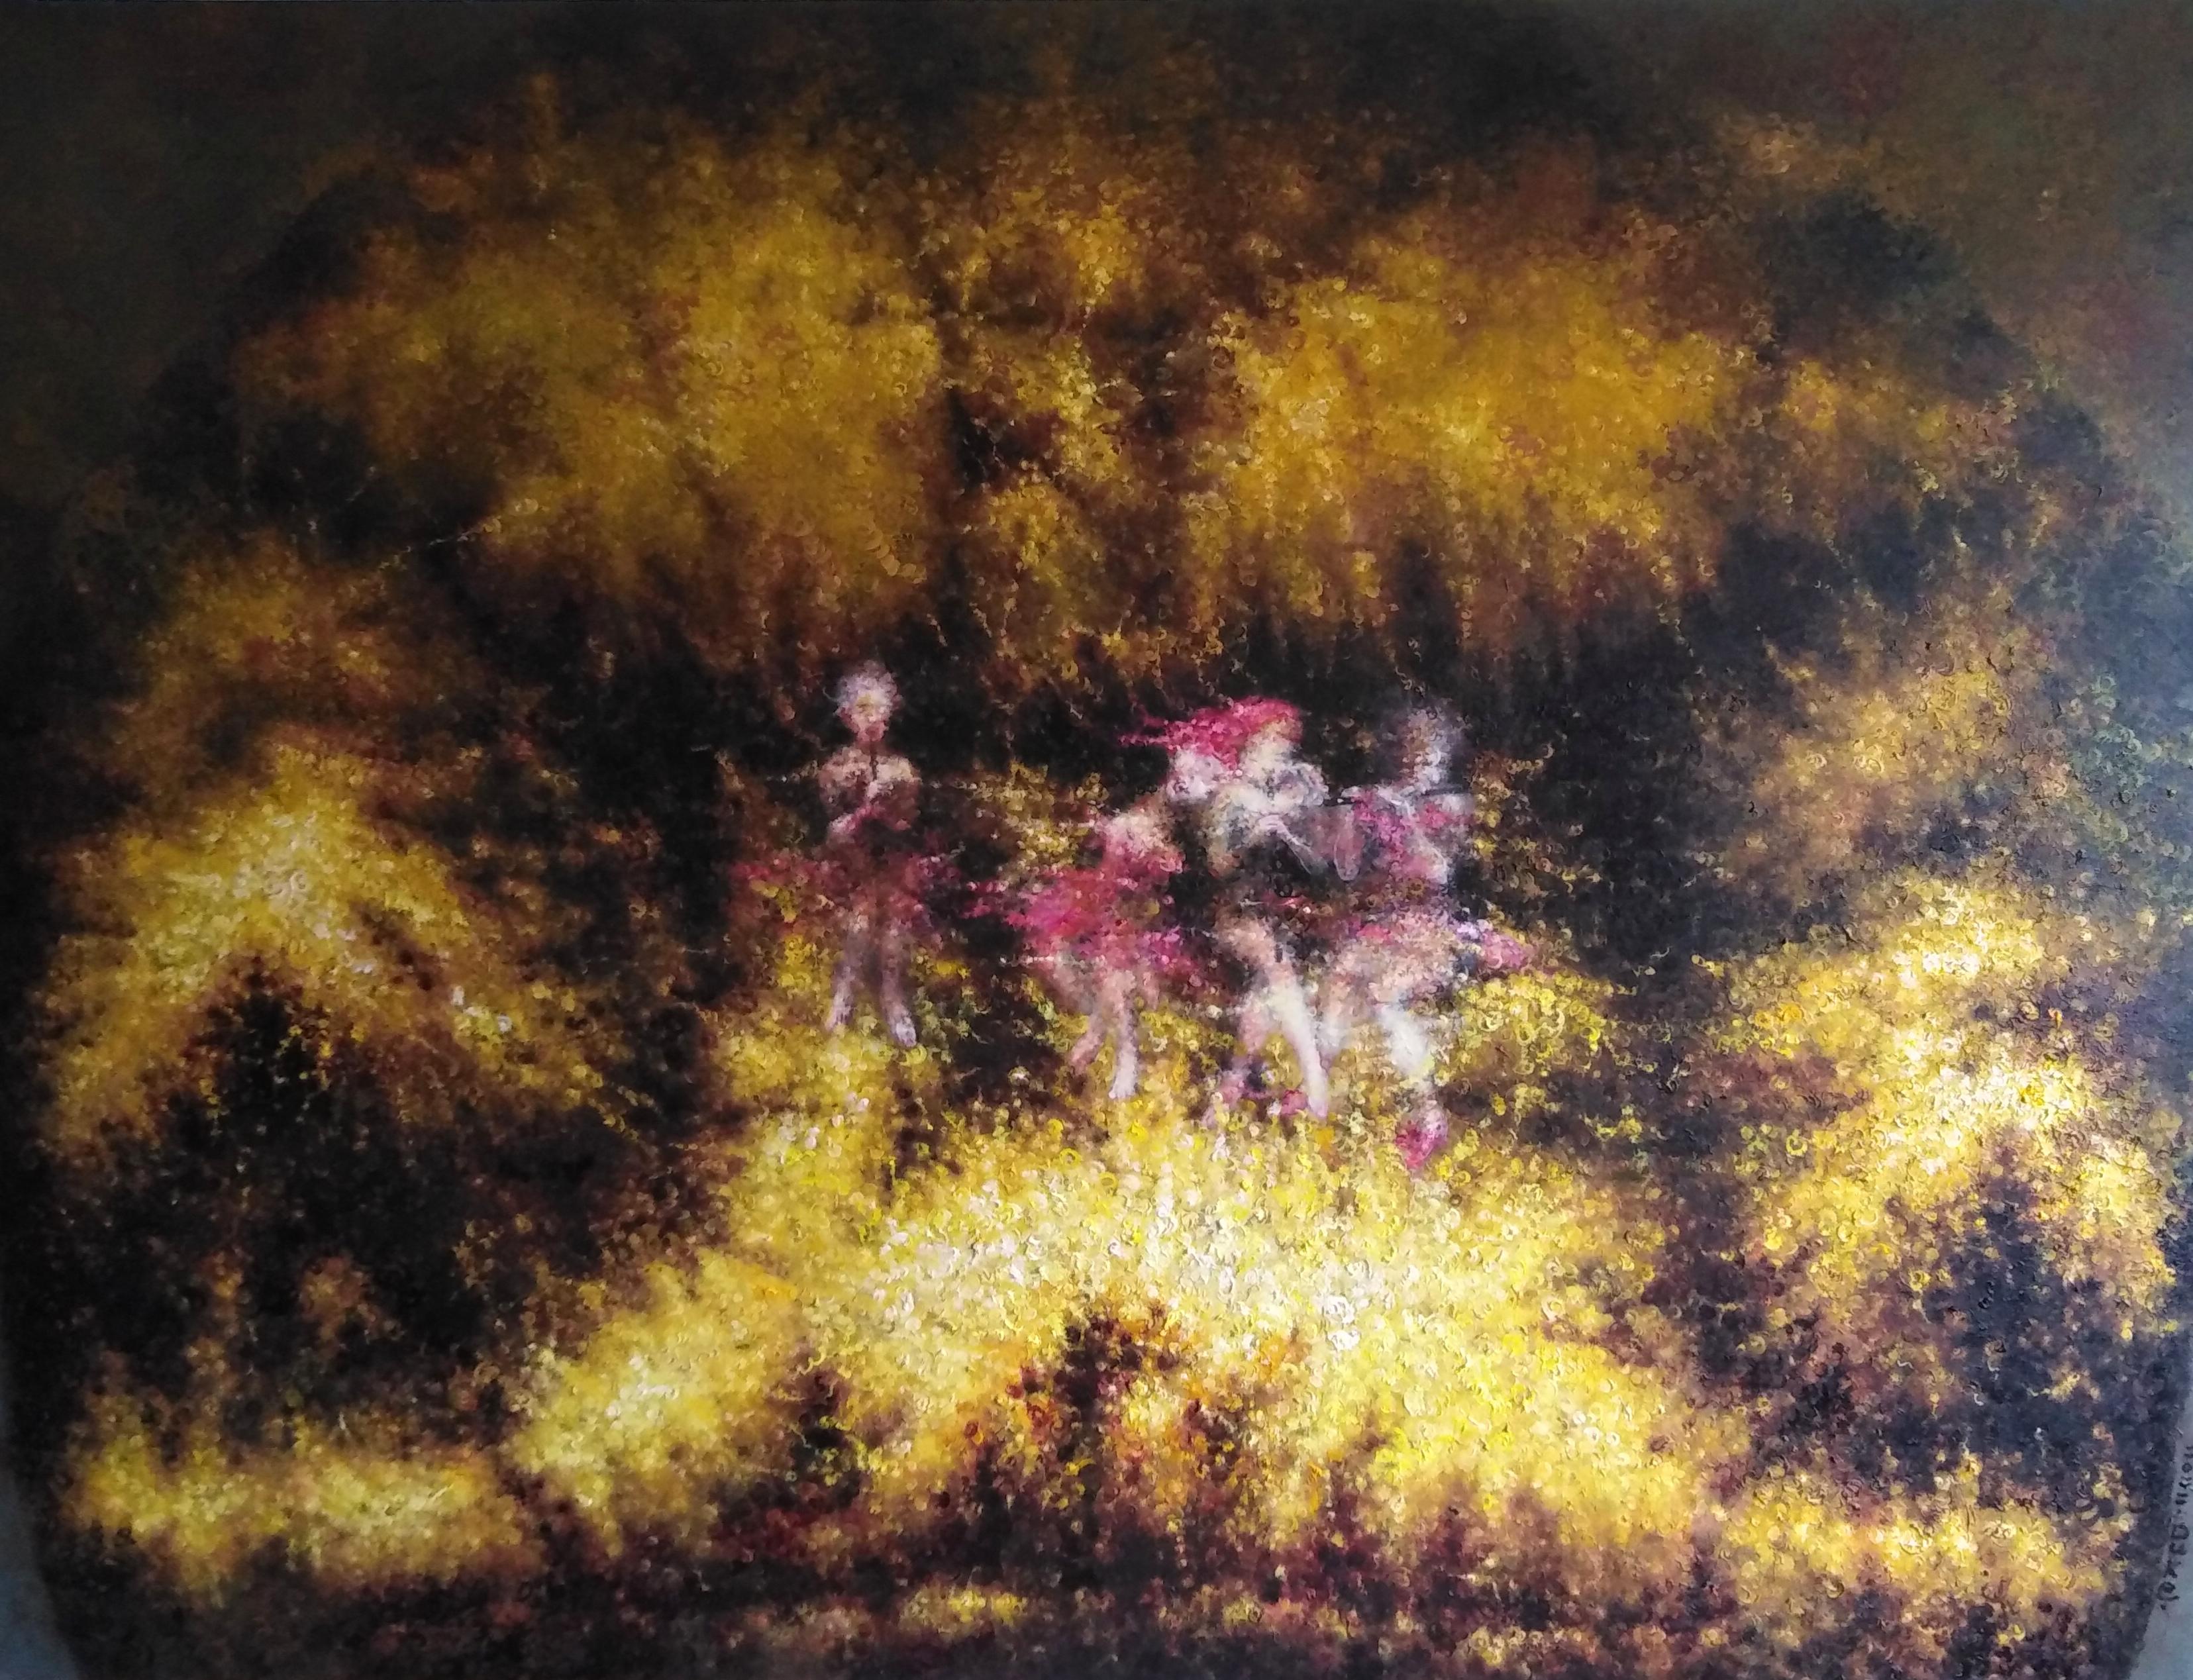 Huile sur toile

Du Ke est un artiste chinois né en 1968 qui vit et travaille dans le district de Tongzhou, à Pékin, en Chine. Il a été diplômé du département de peinture de l'Academy Fine Paintings de Tianjin en 1994. En 1995, il s'est installé